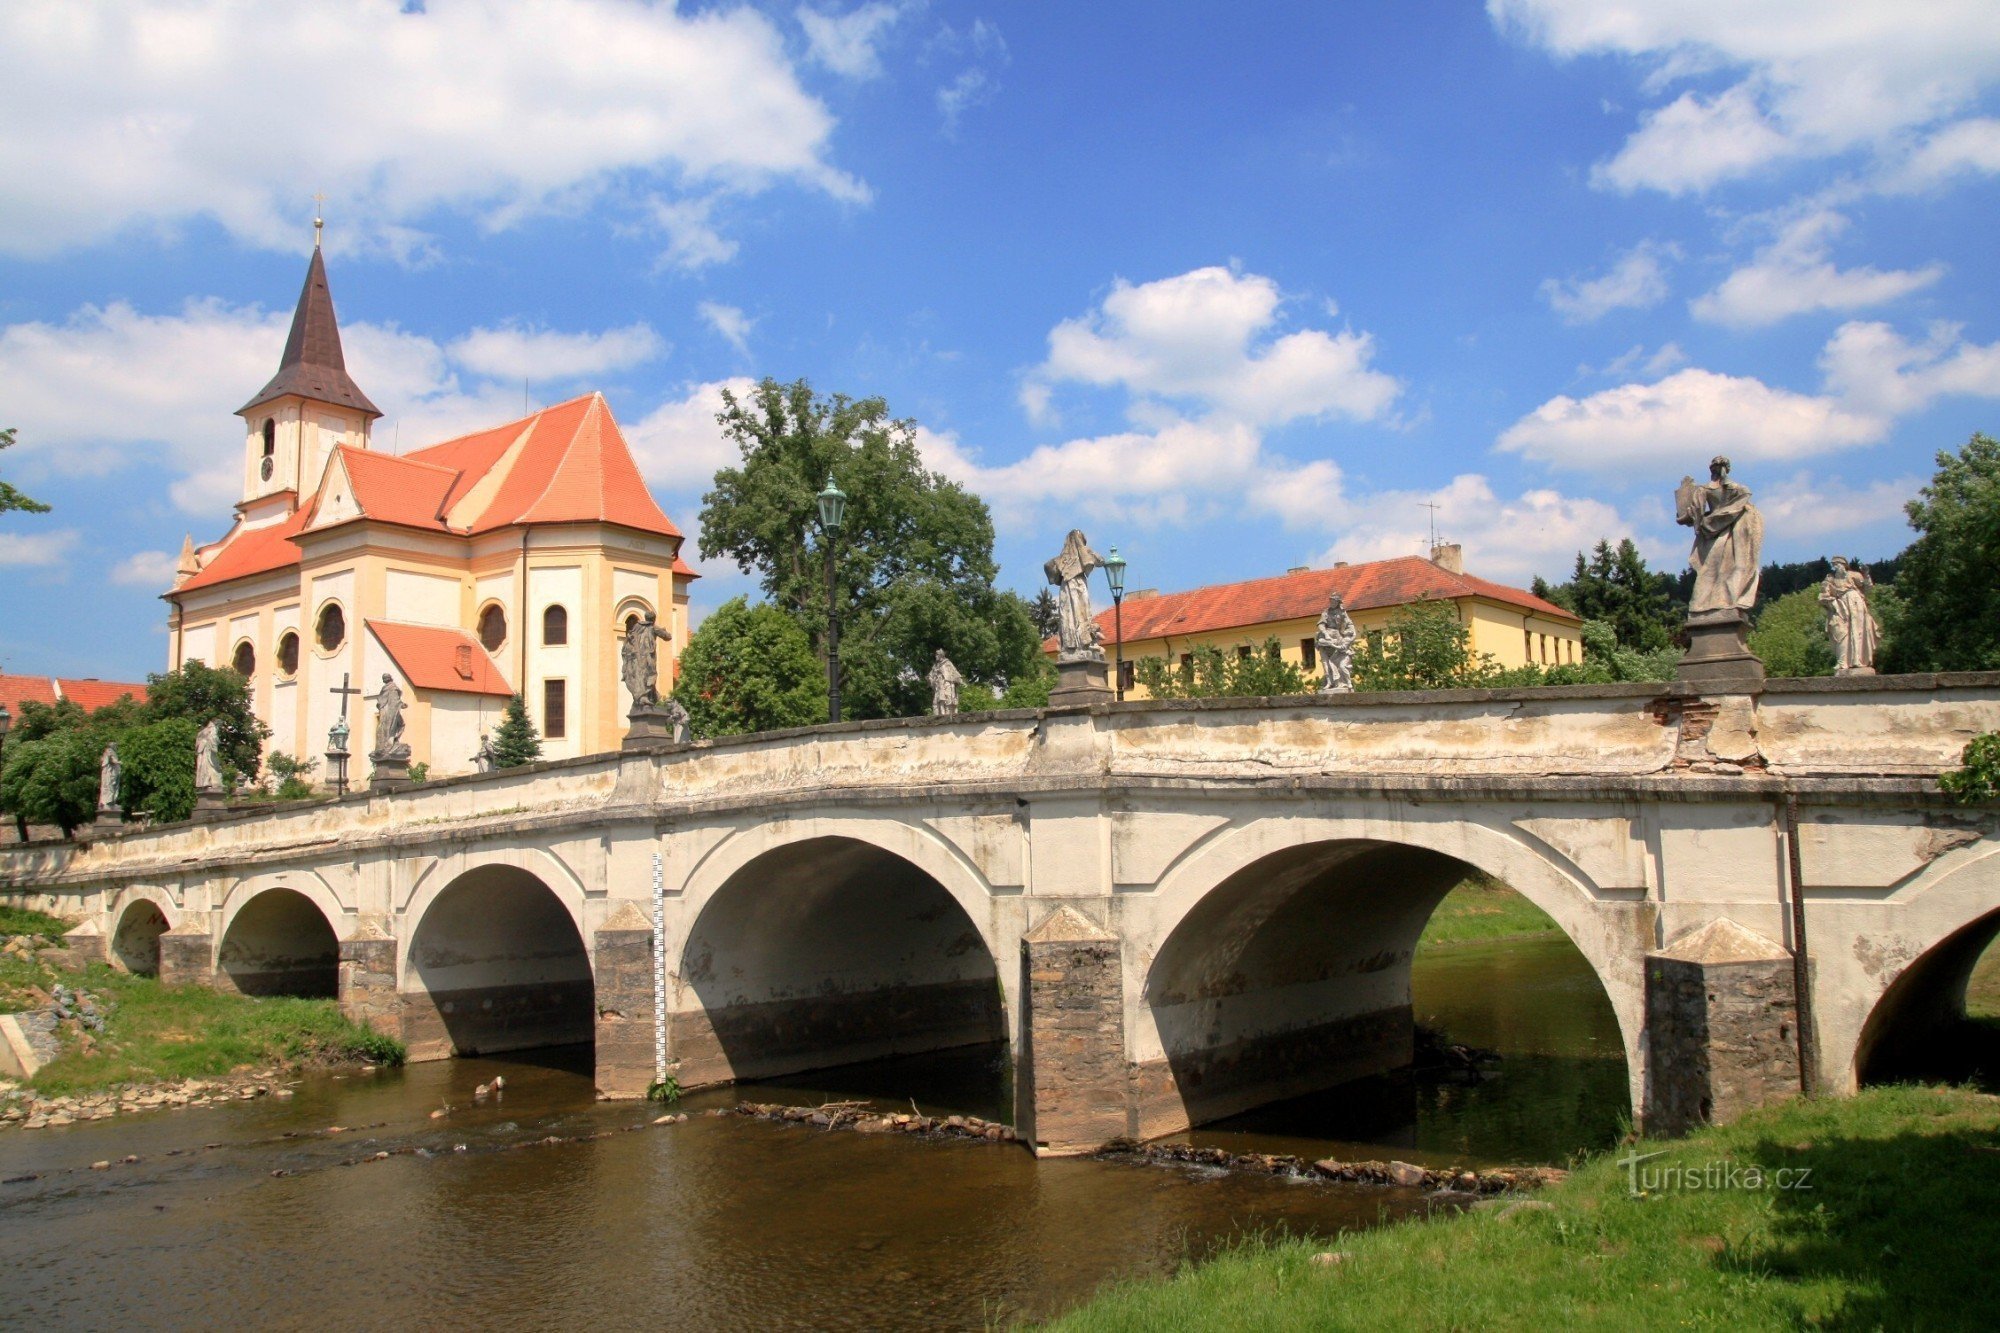 Намешть-над-Ославой - каменный мост в стиле барокко 2011 г.